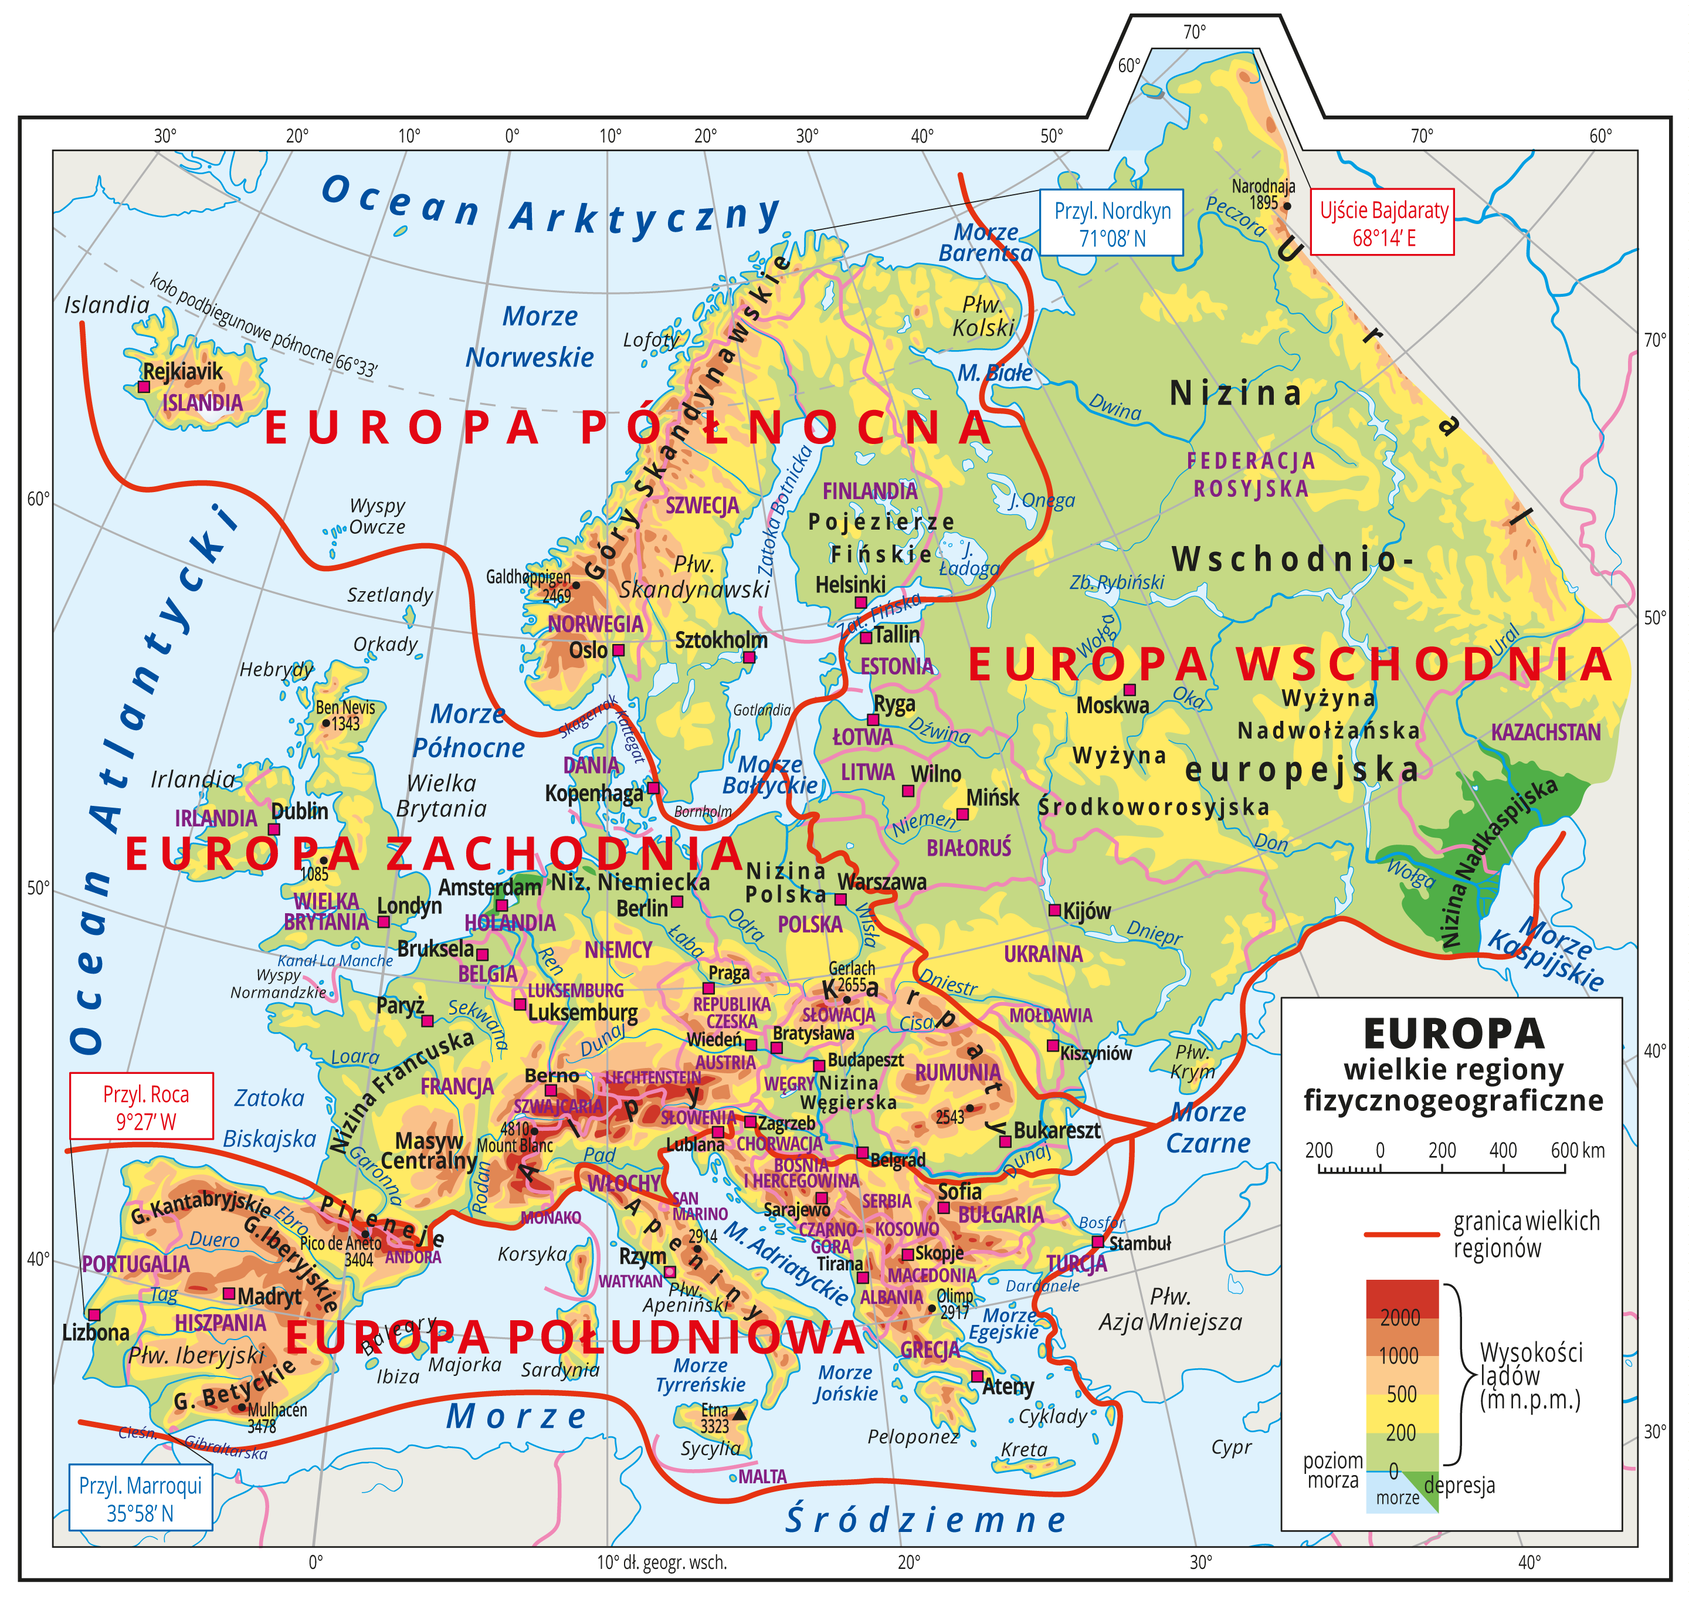 Europa – podział na główne regiony fizyczno-geograficzne